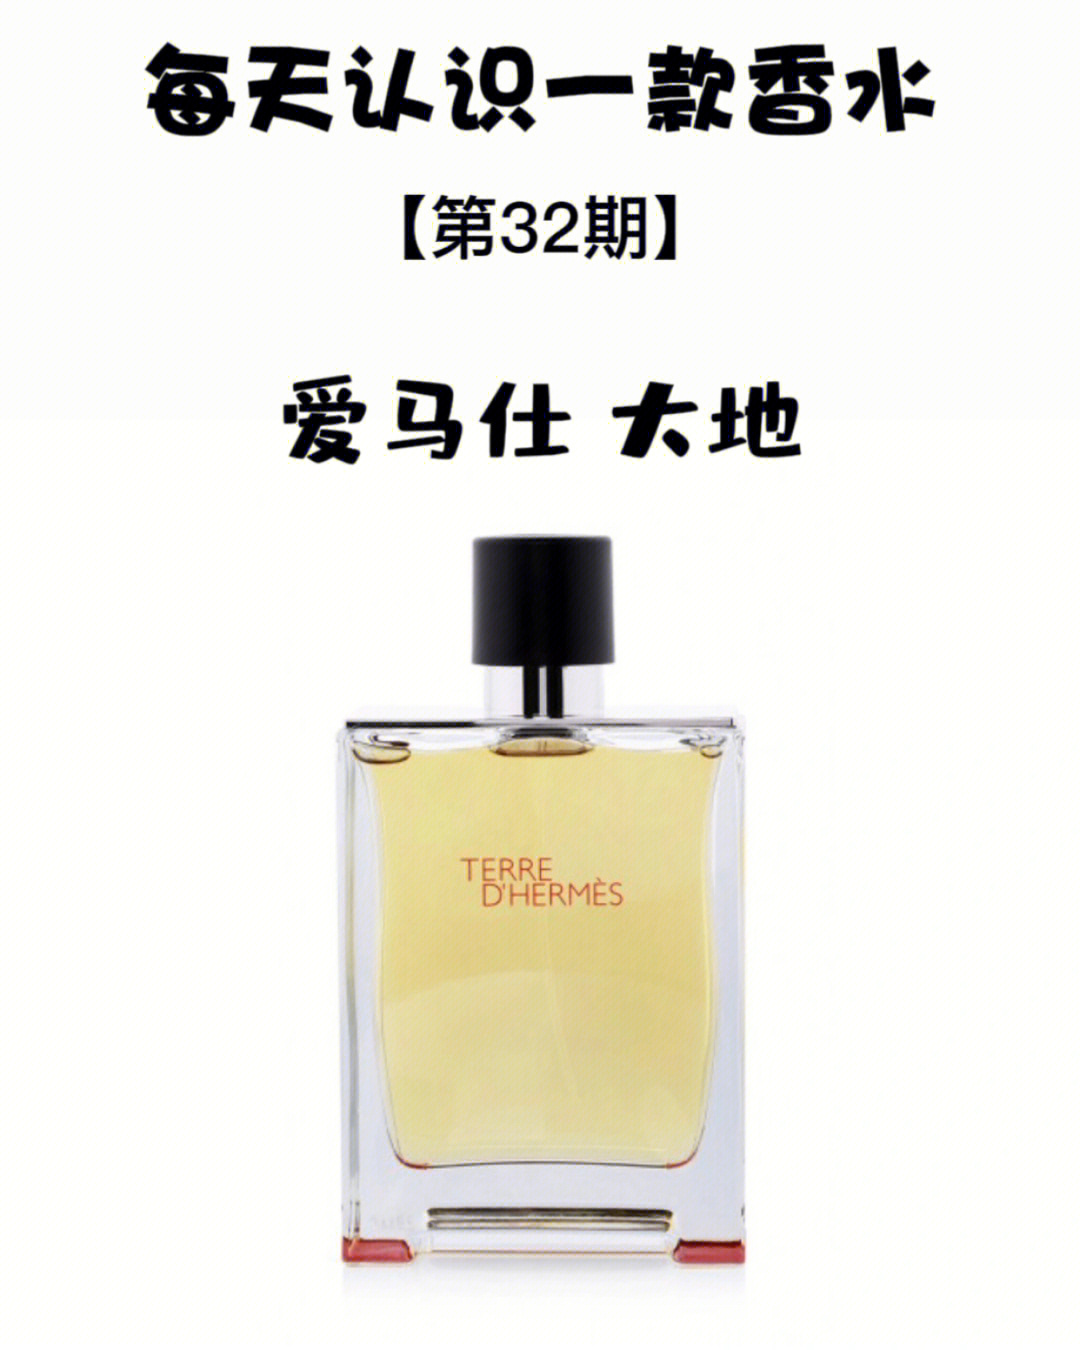 78香水起源:大地这款香水诞生于2006年,调香师jean